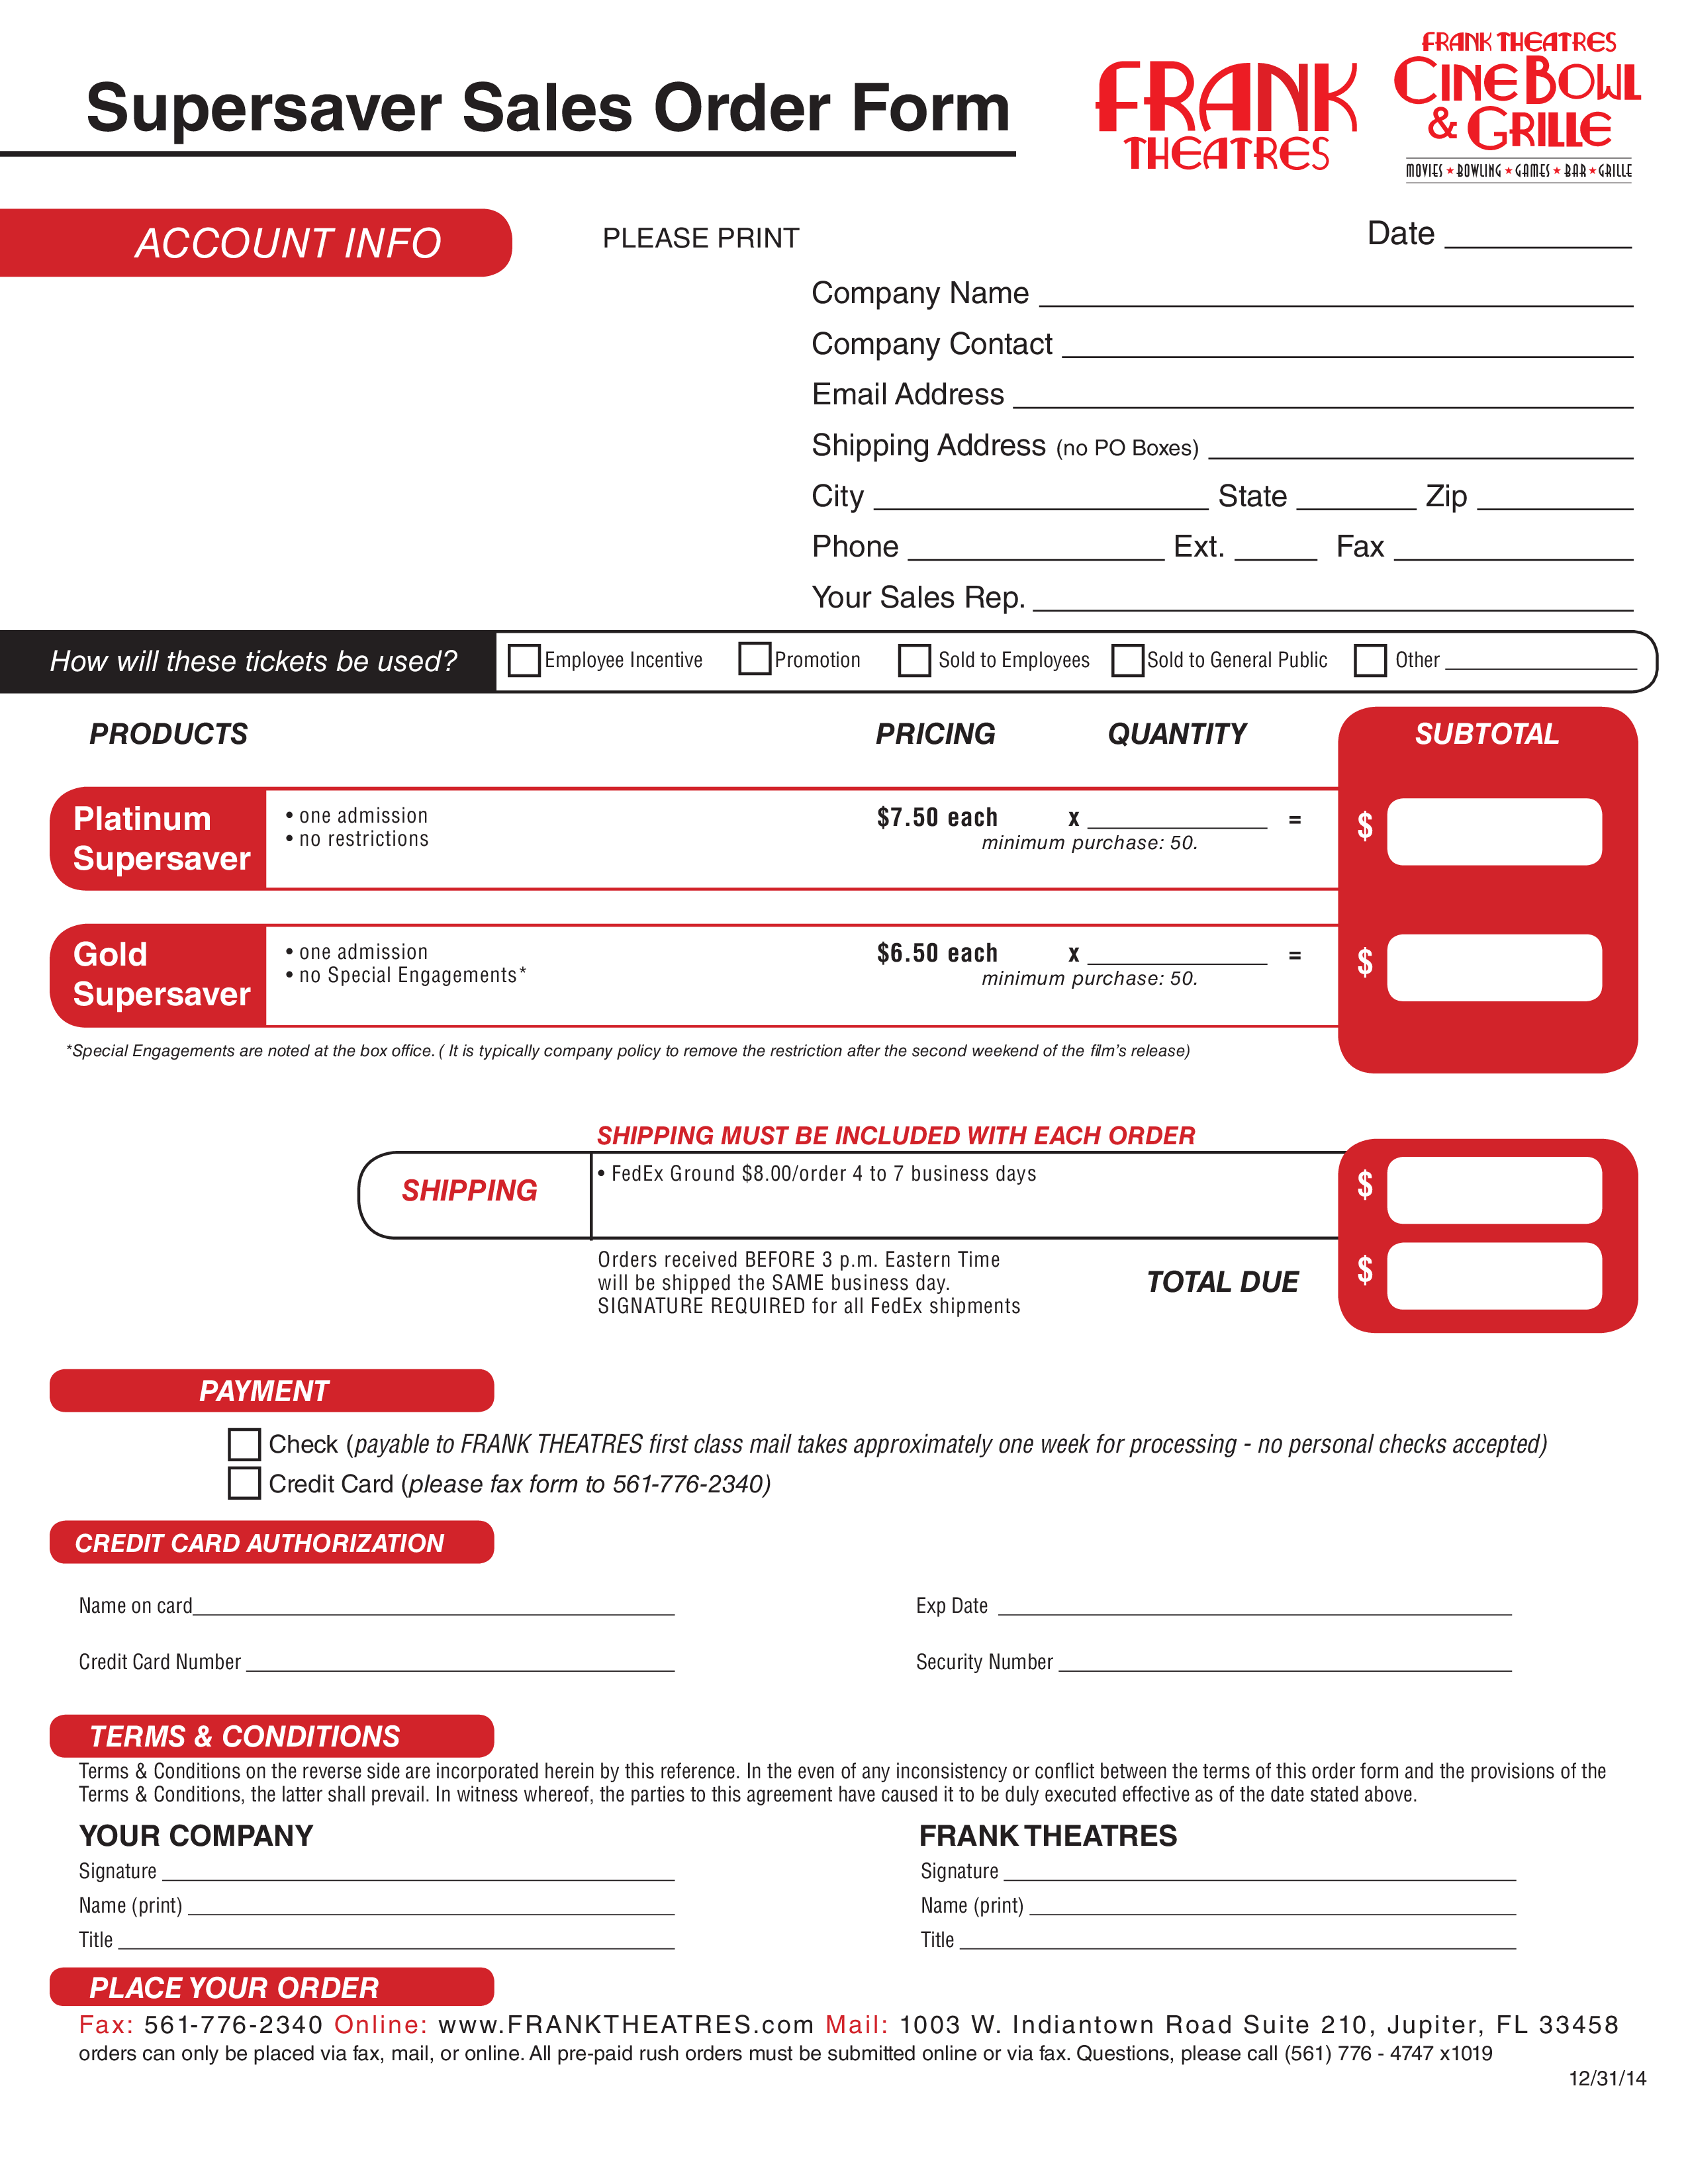 Super Saver Sales Order Form Sample 模板